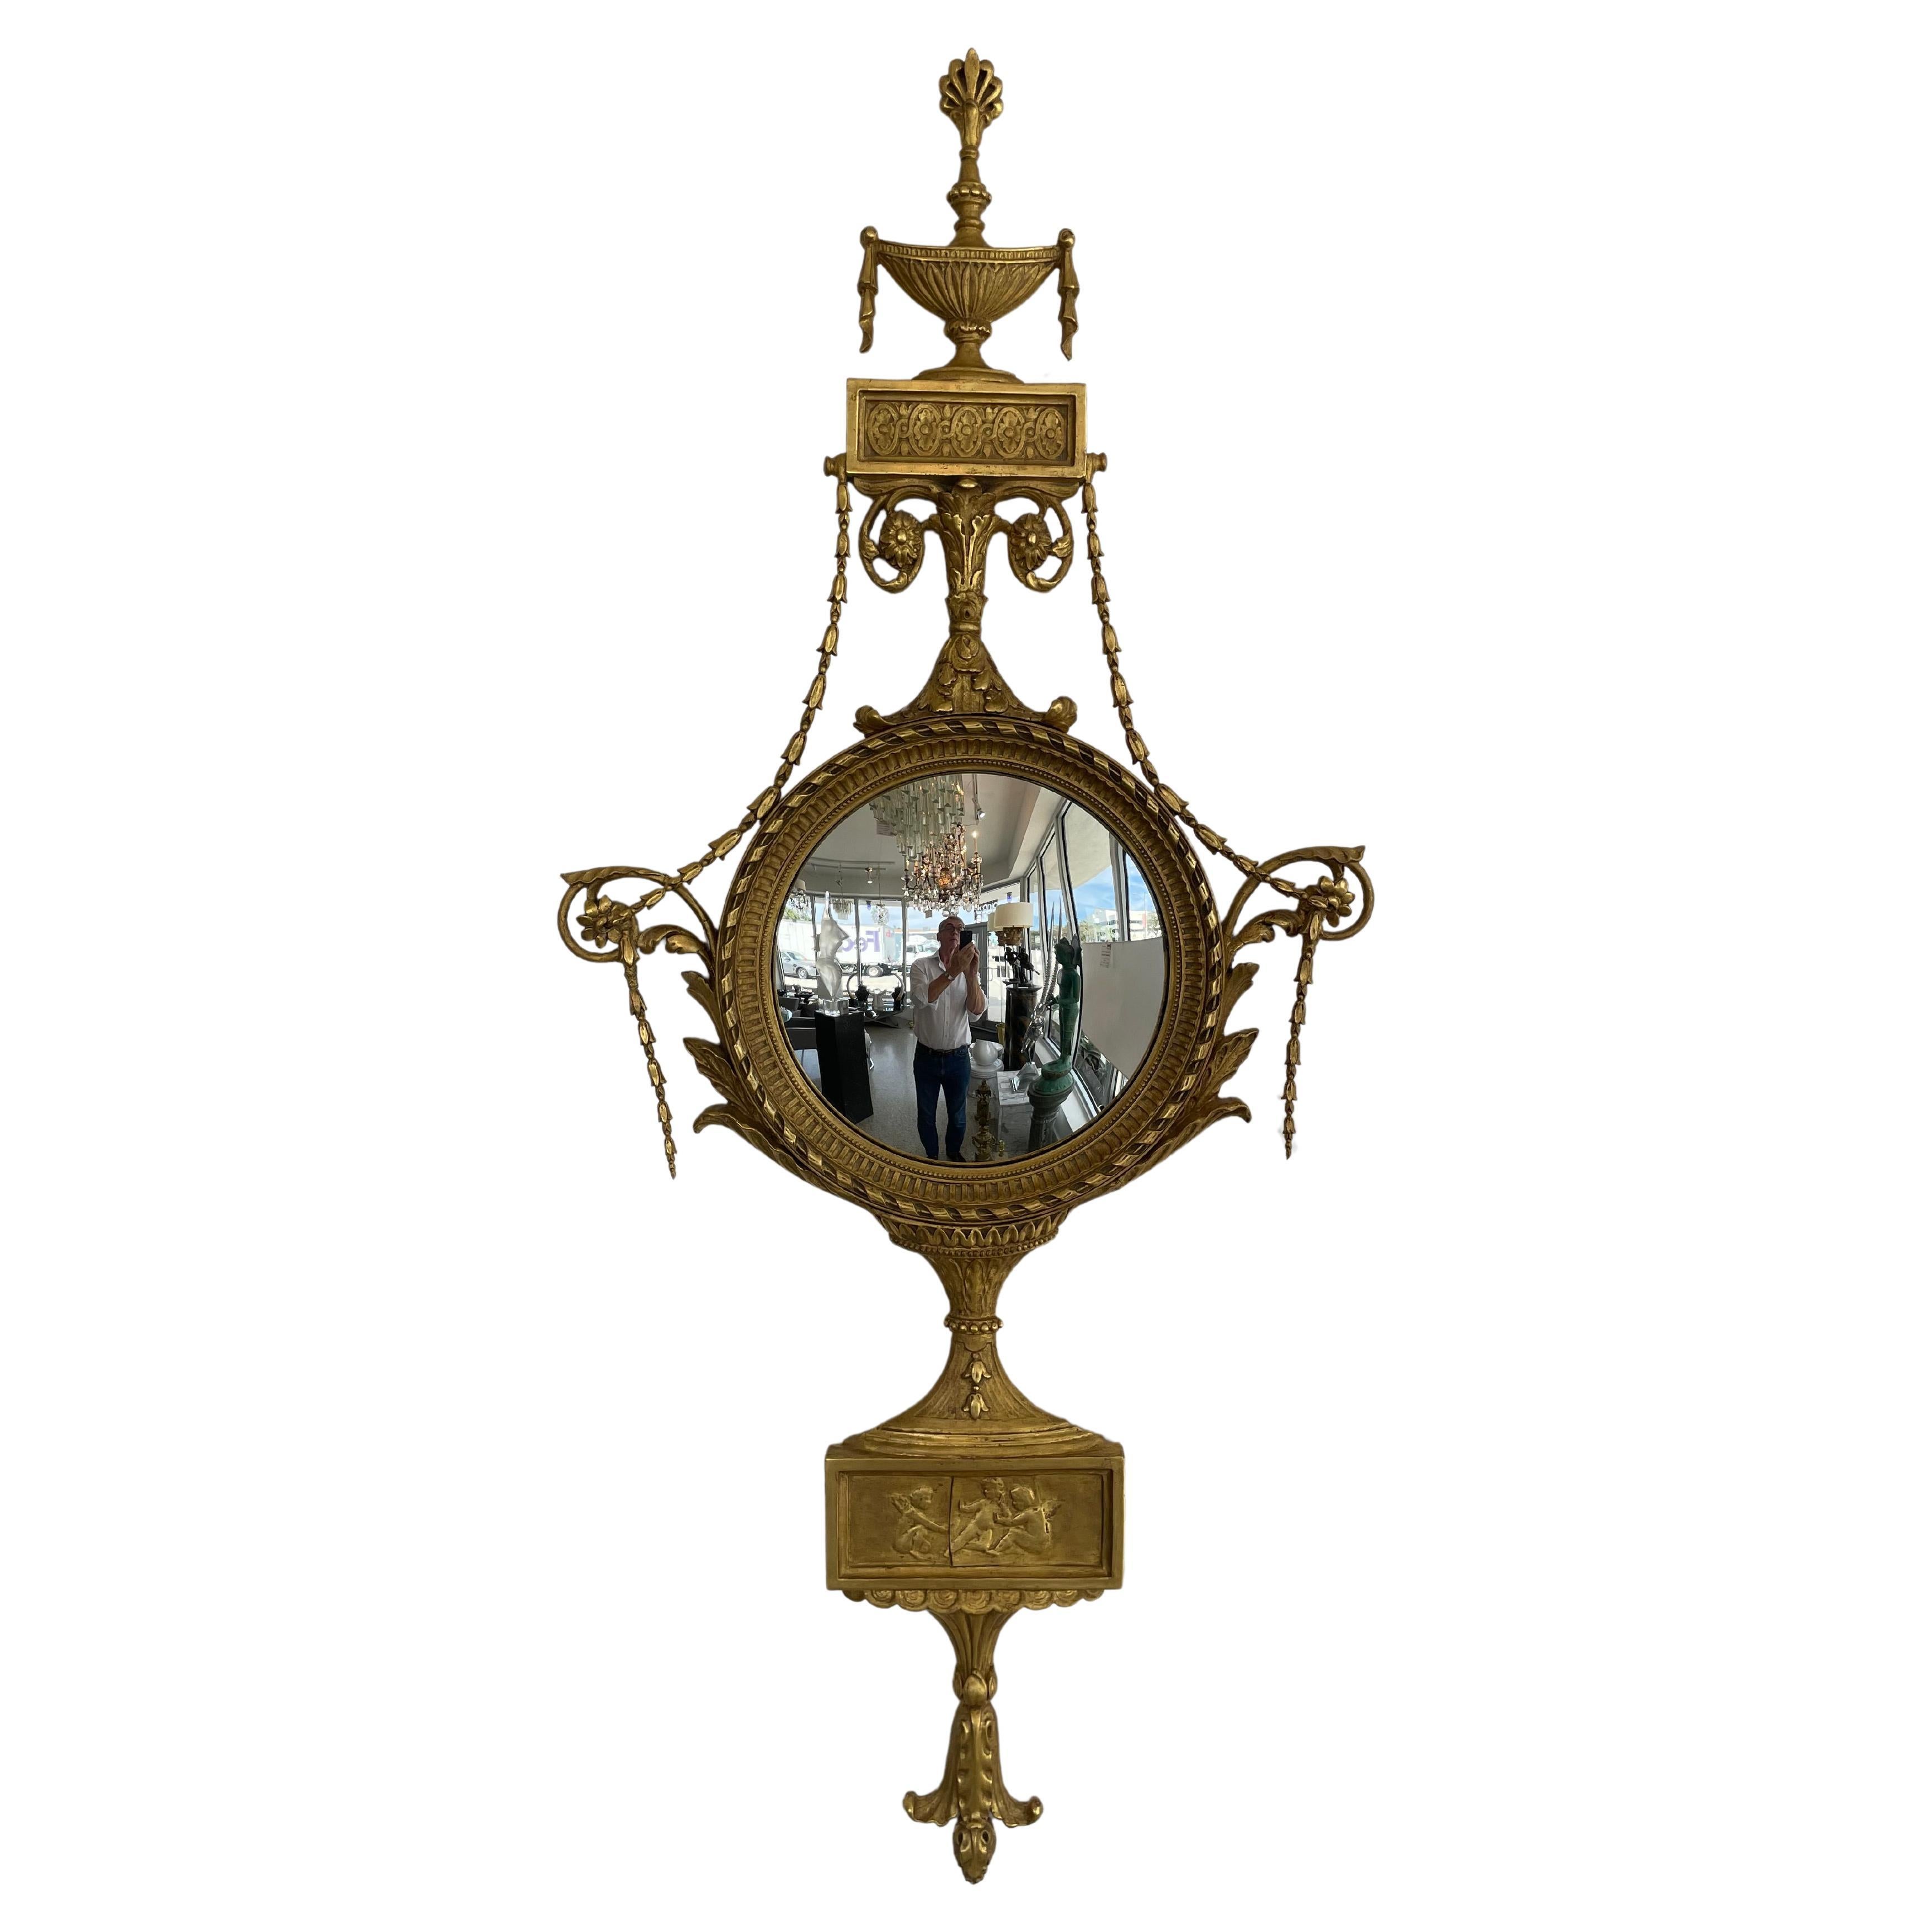 Cet élégant miroir mural convexe de style Adams date de la fin du XIXe siècle. Sa forme et son utilisation des matériaux en font un objet subtil et élégant.  

Note : Conserve son étiquette d'origine pour les rétaliens.

Pour information : Histoire